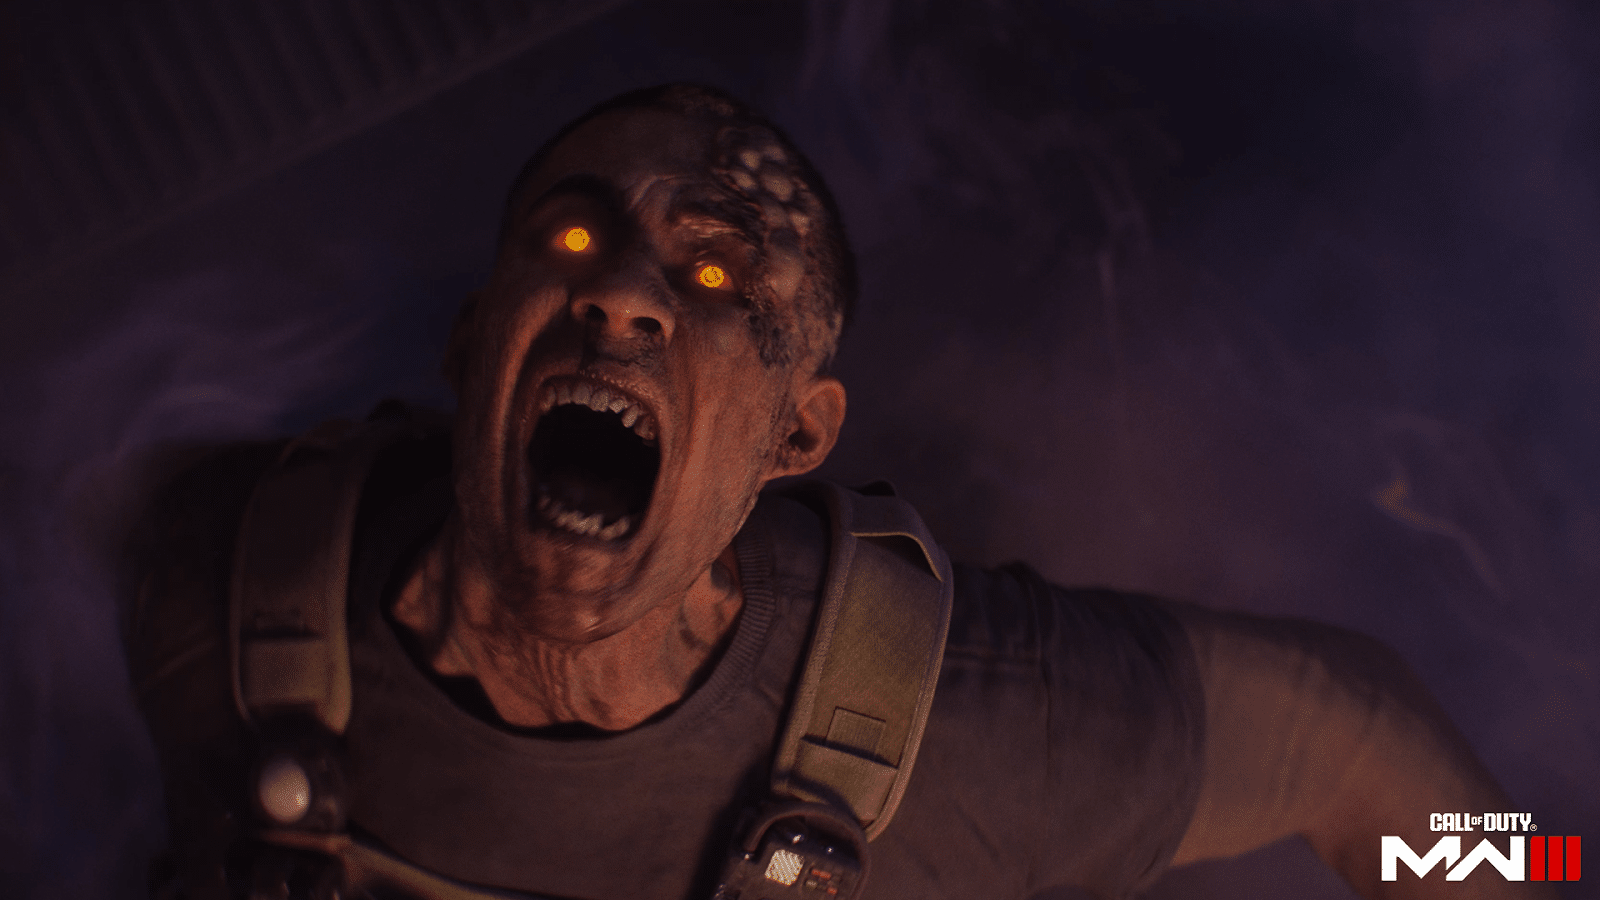 Hoe je een huurlingenkonvooi vernietigt in Call of Duty: MW3 Zombies